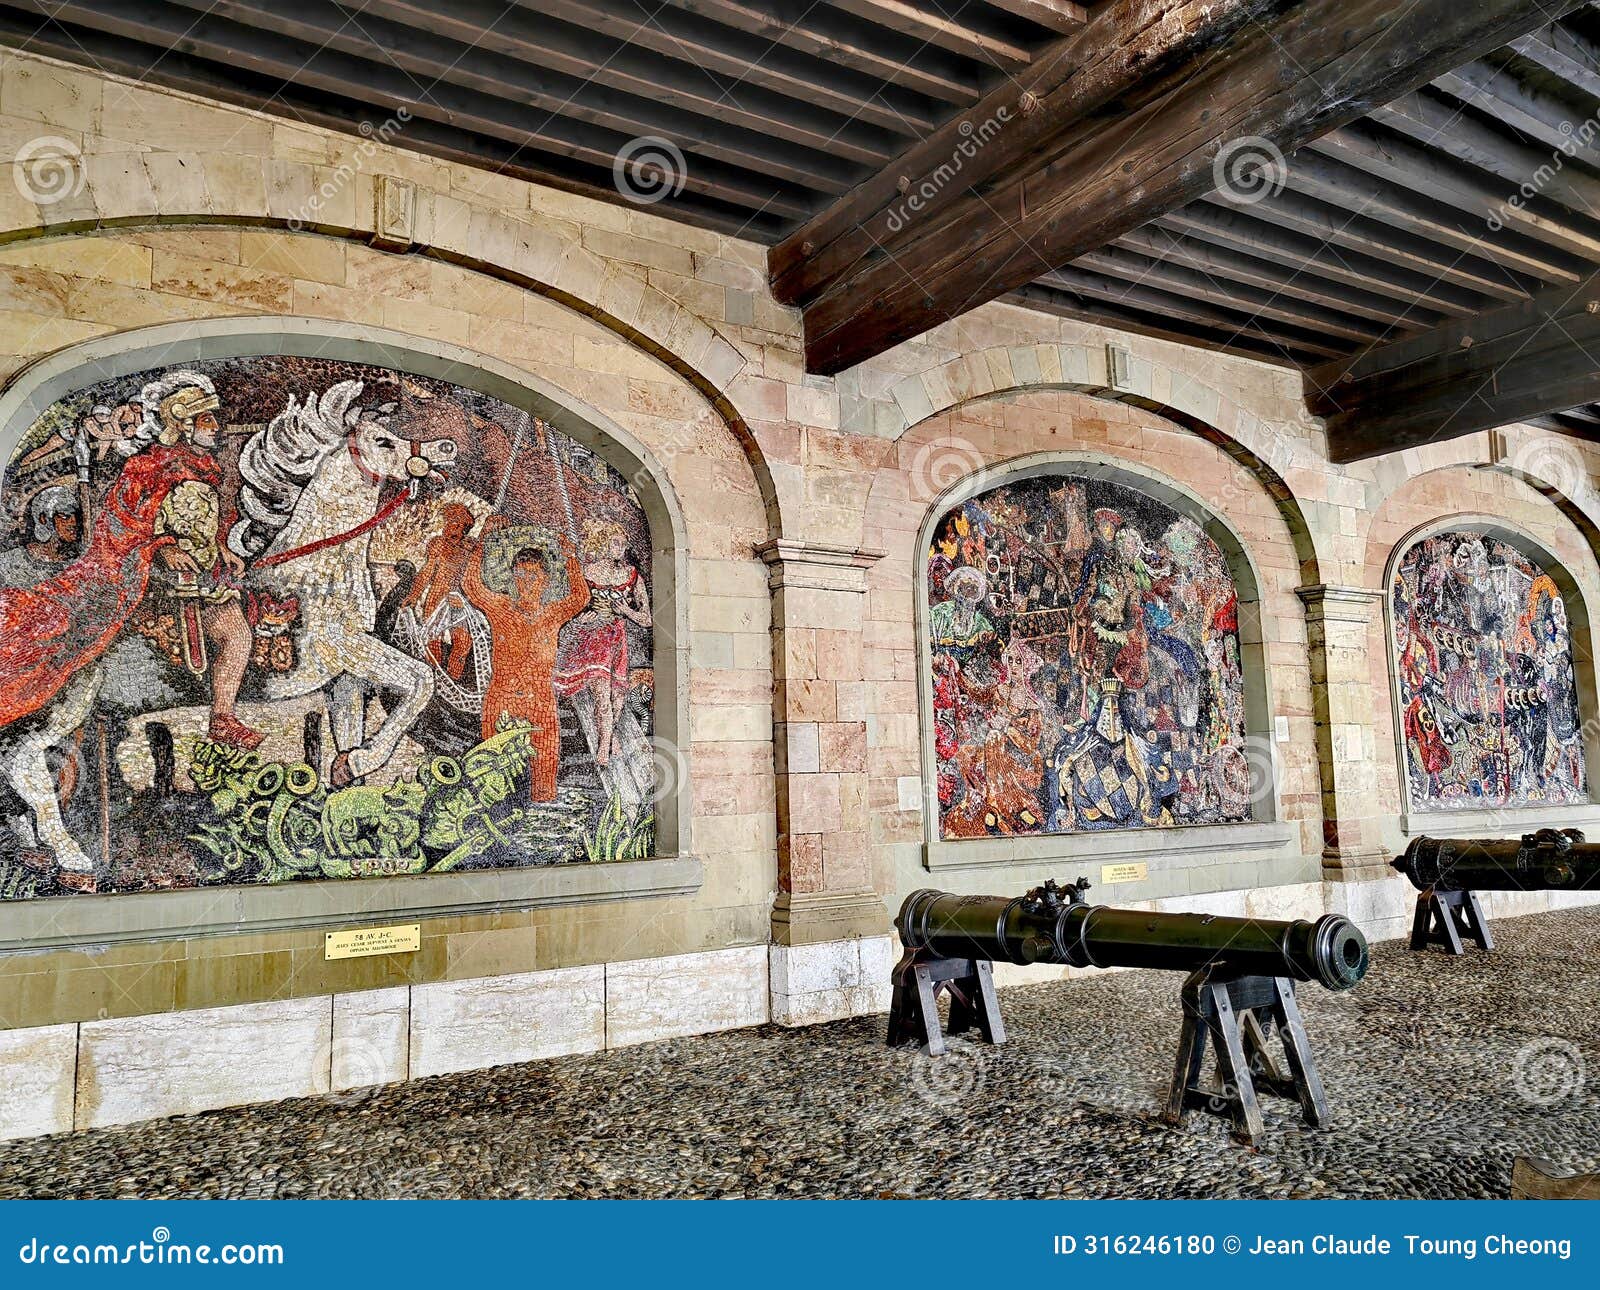 beautiful mosaics at l'ancien arsenal, geneva.